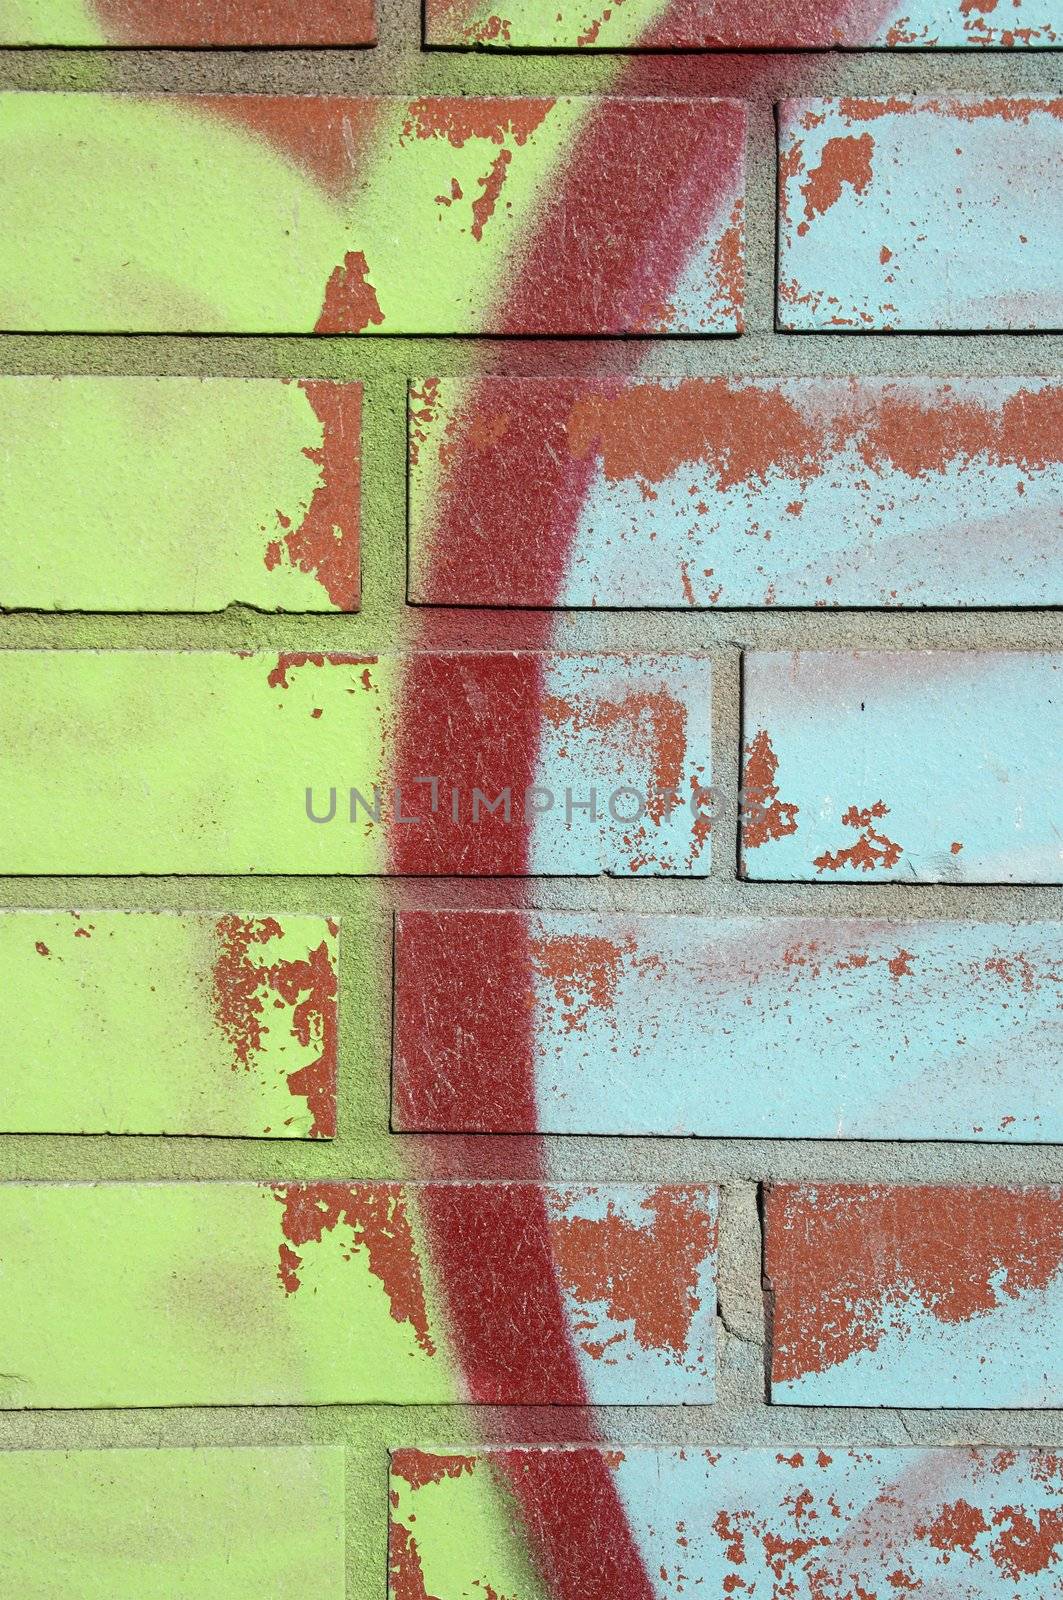 Graffiti and brick background by anikasalsera